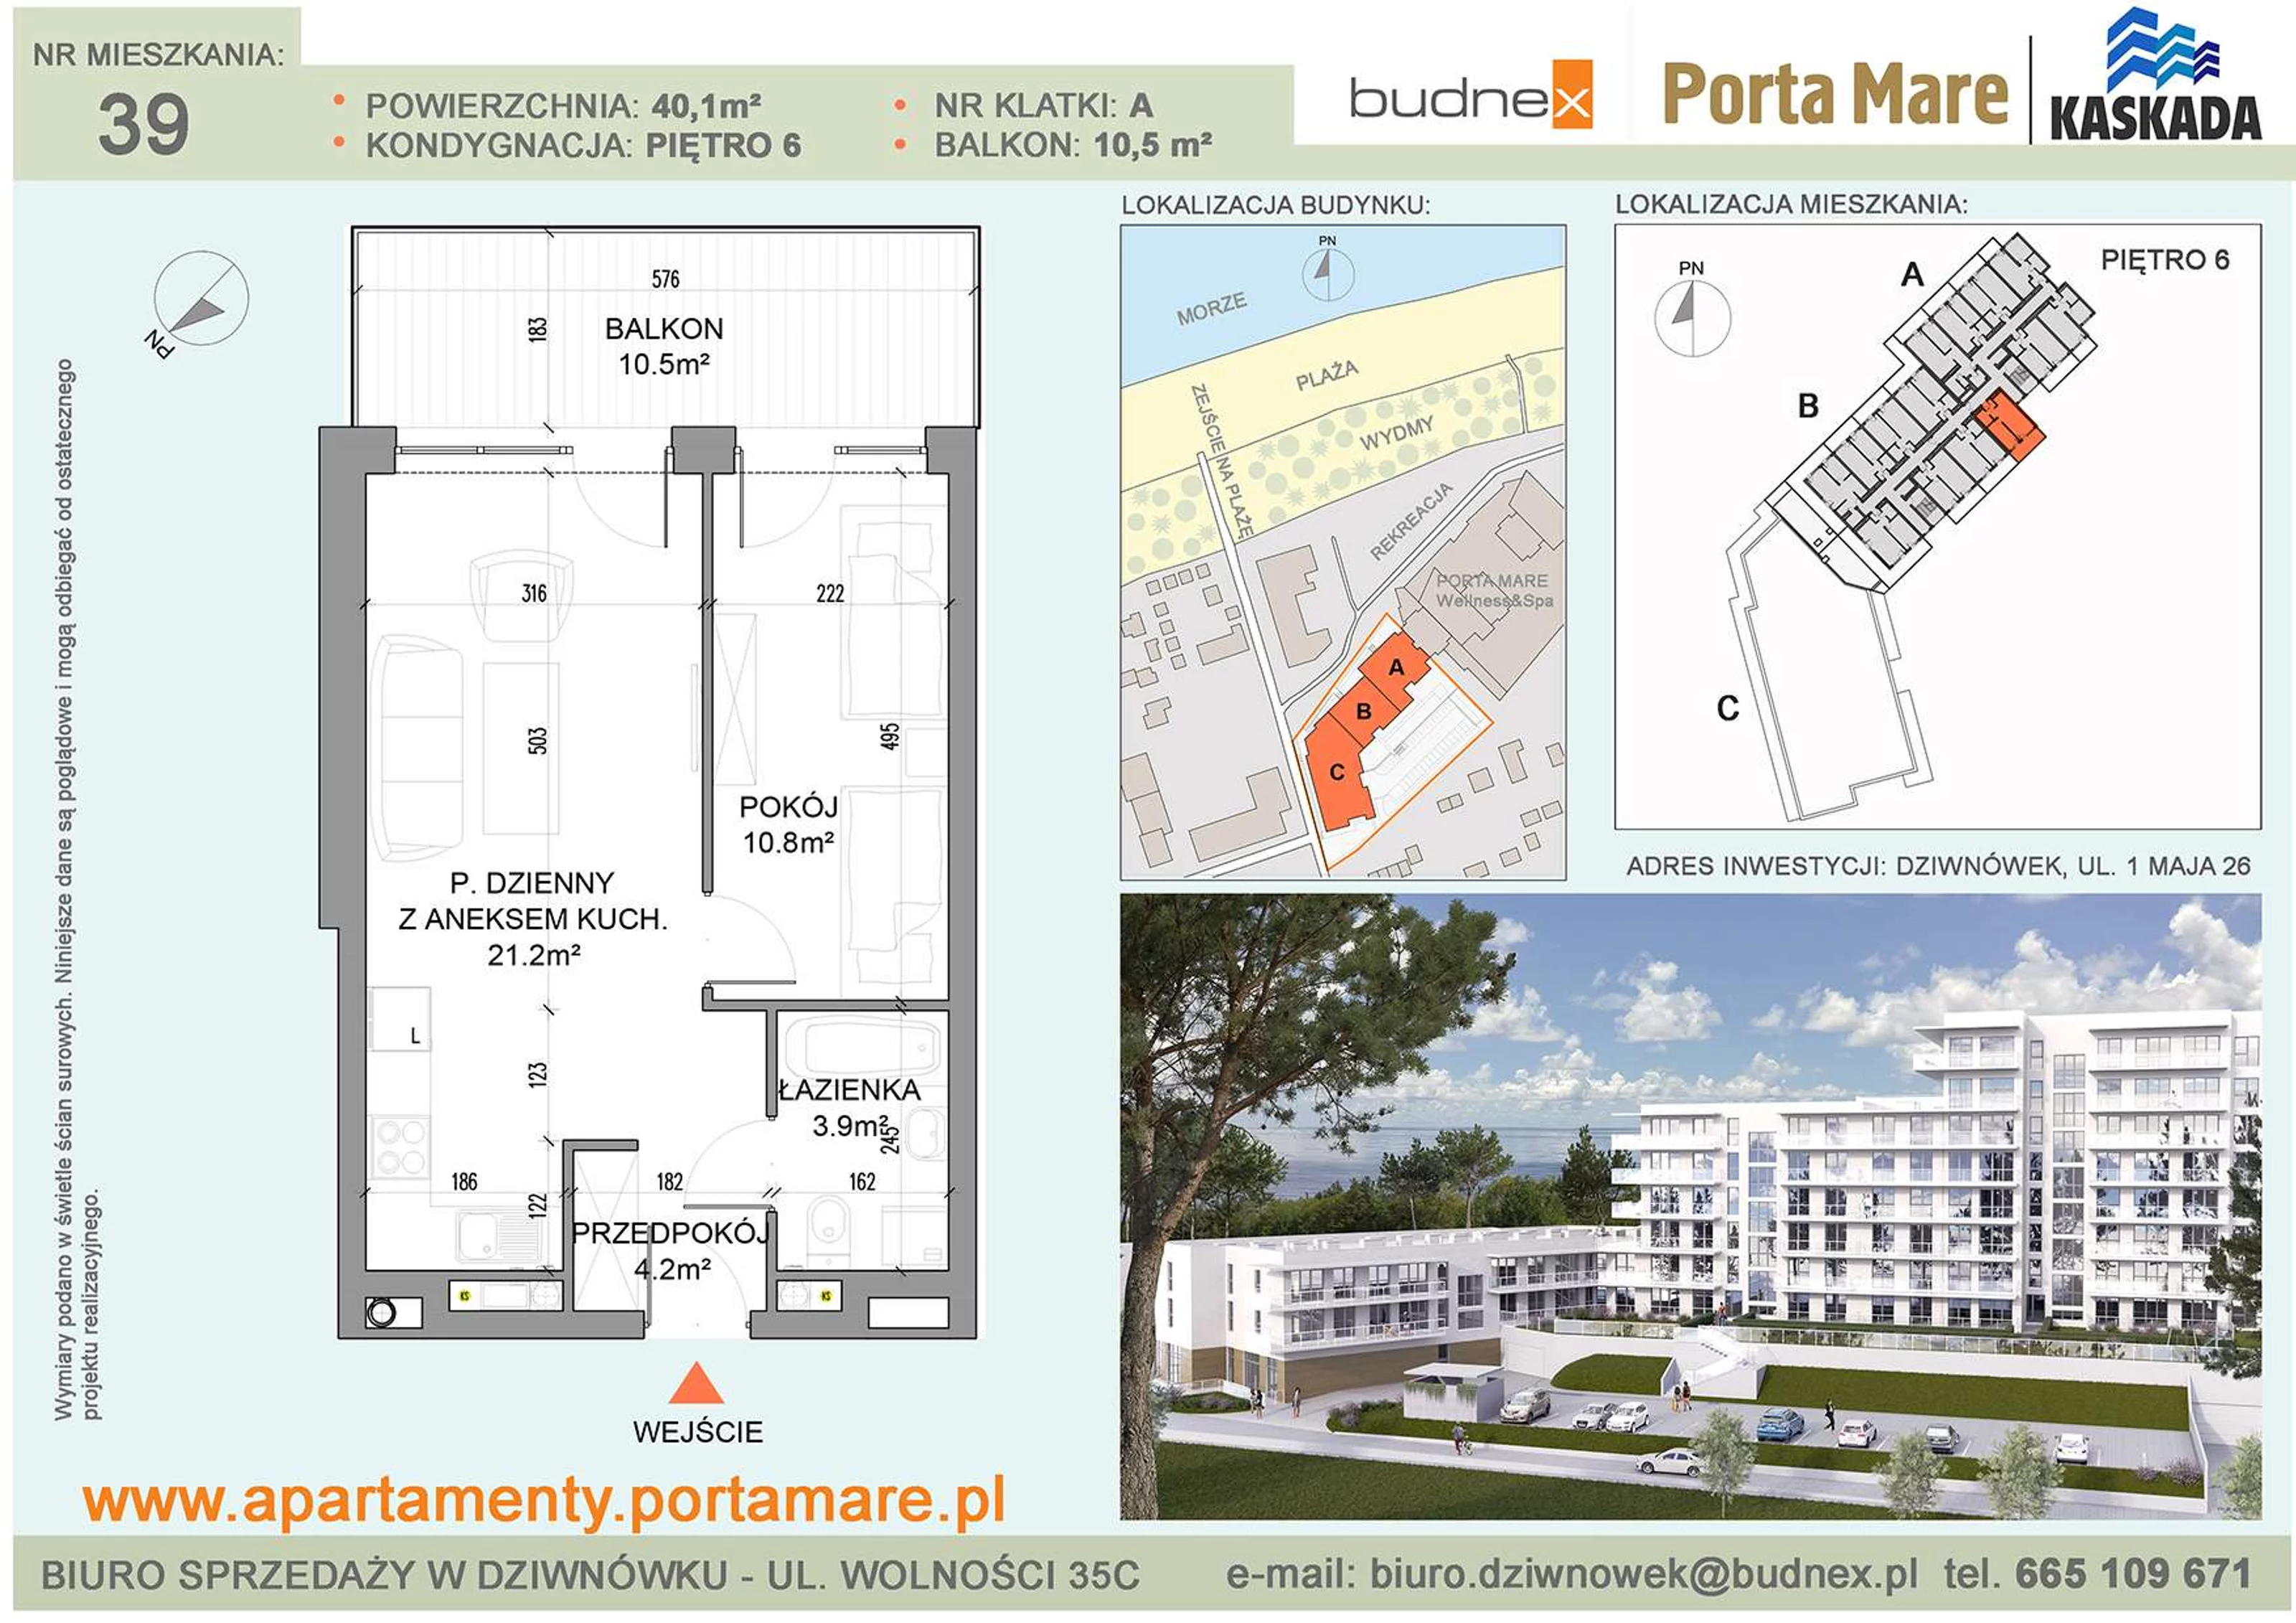 Mieszkanie 40,10 m², piętro 6, oferta nr A/M39, Porta Mare Kaskada, Dziwnówek, ul. 1 Maja 26